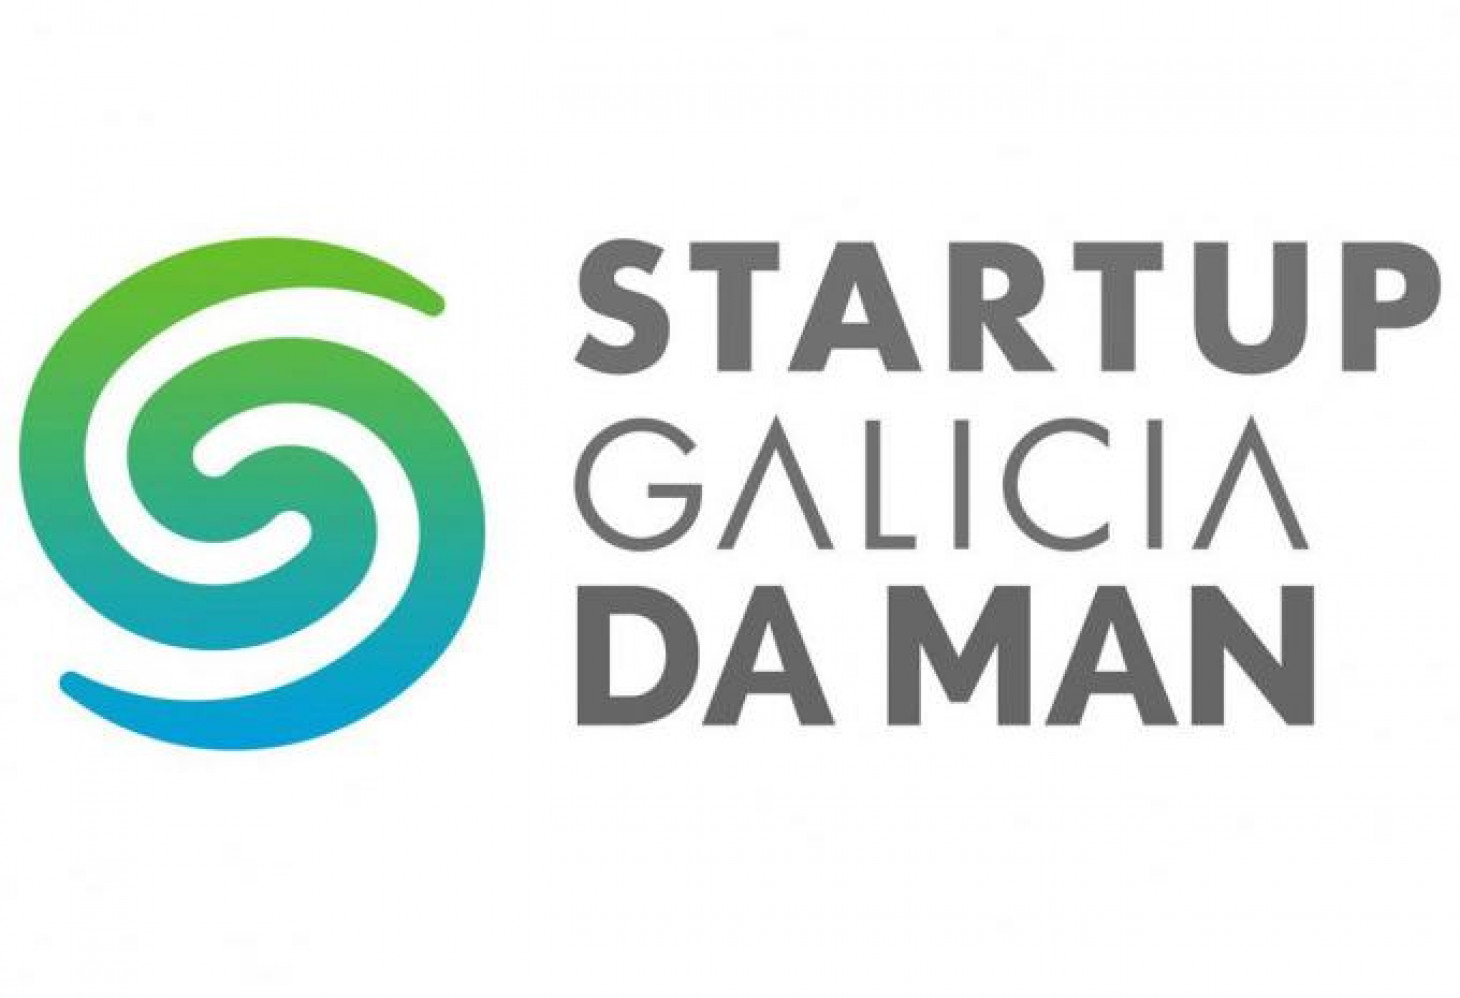 Mentoría Startup Galicia